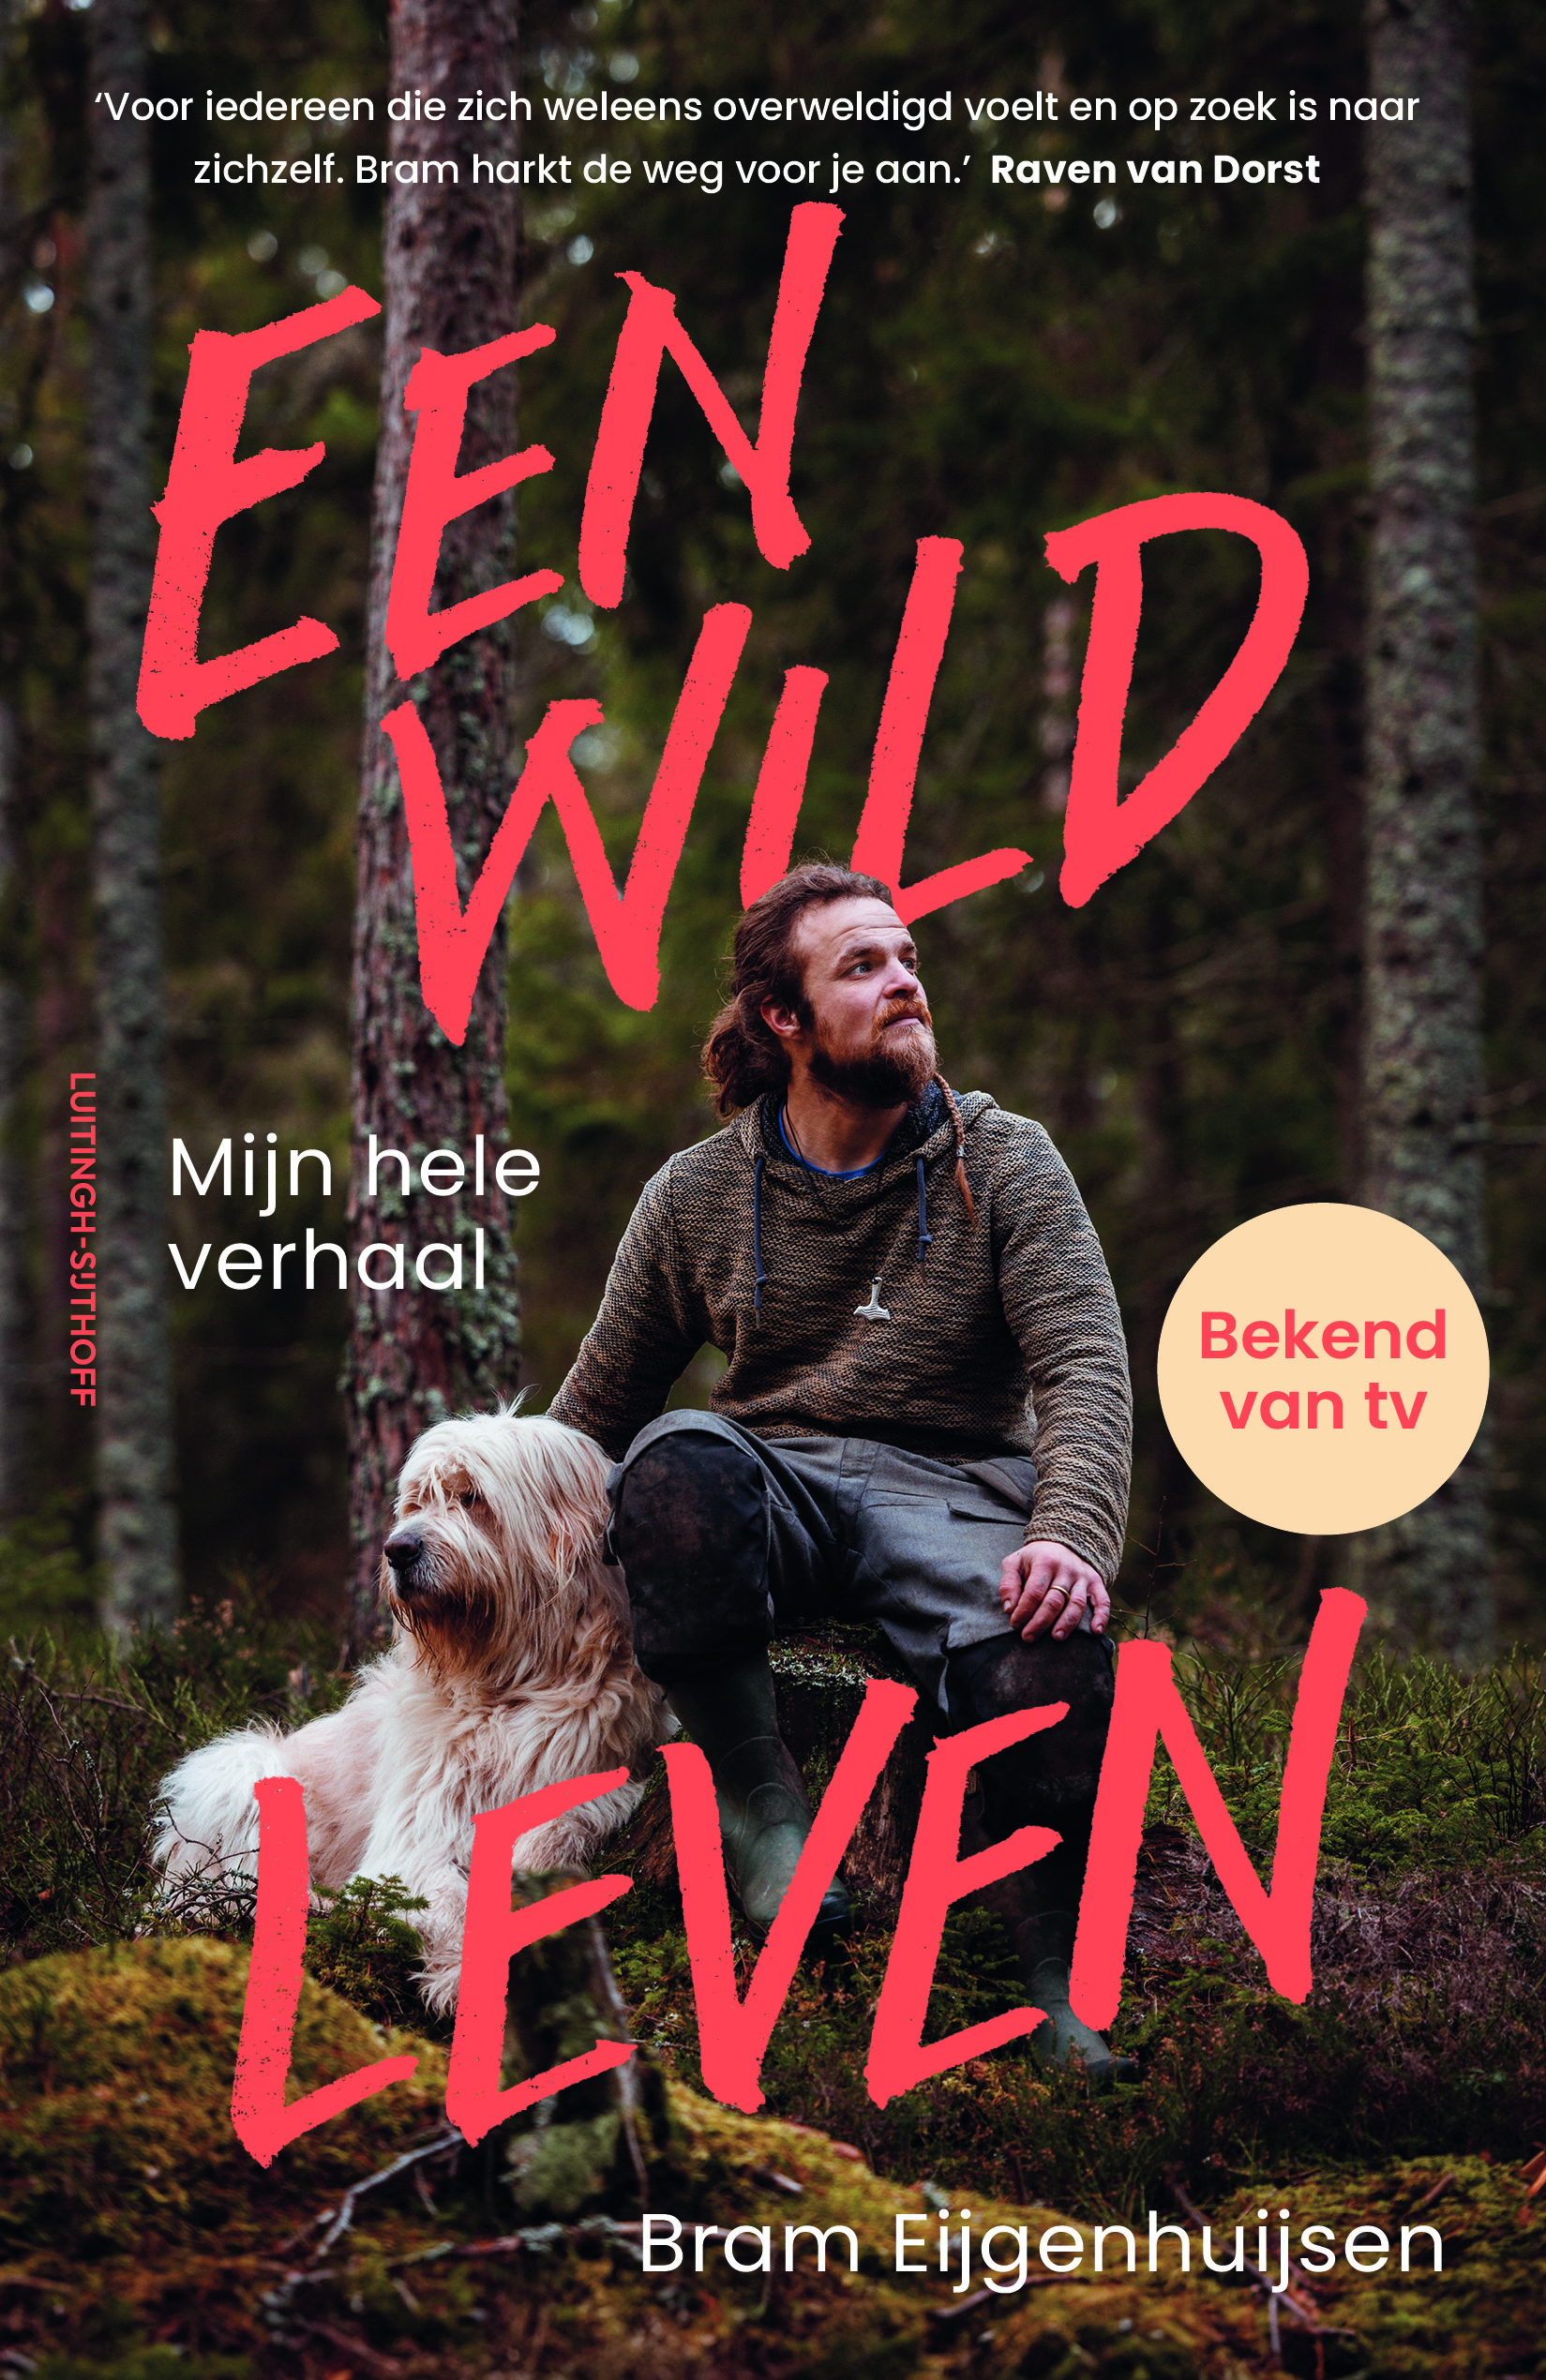 Boeklancering Bram Eijgenhuijzen: 'Een wild leven' op 7 mei bij Broekhuis Almelo